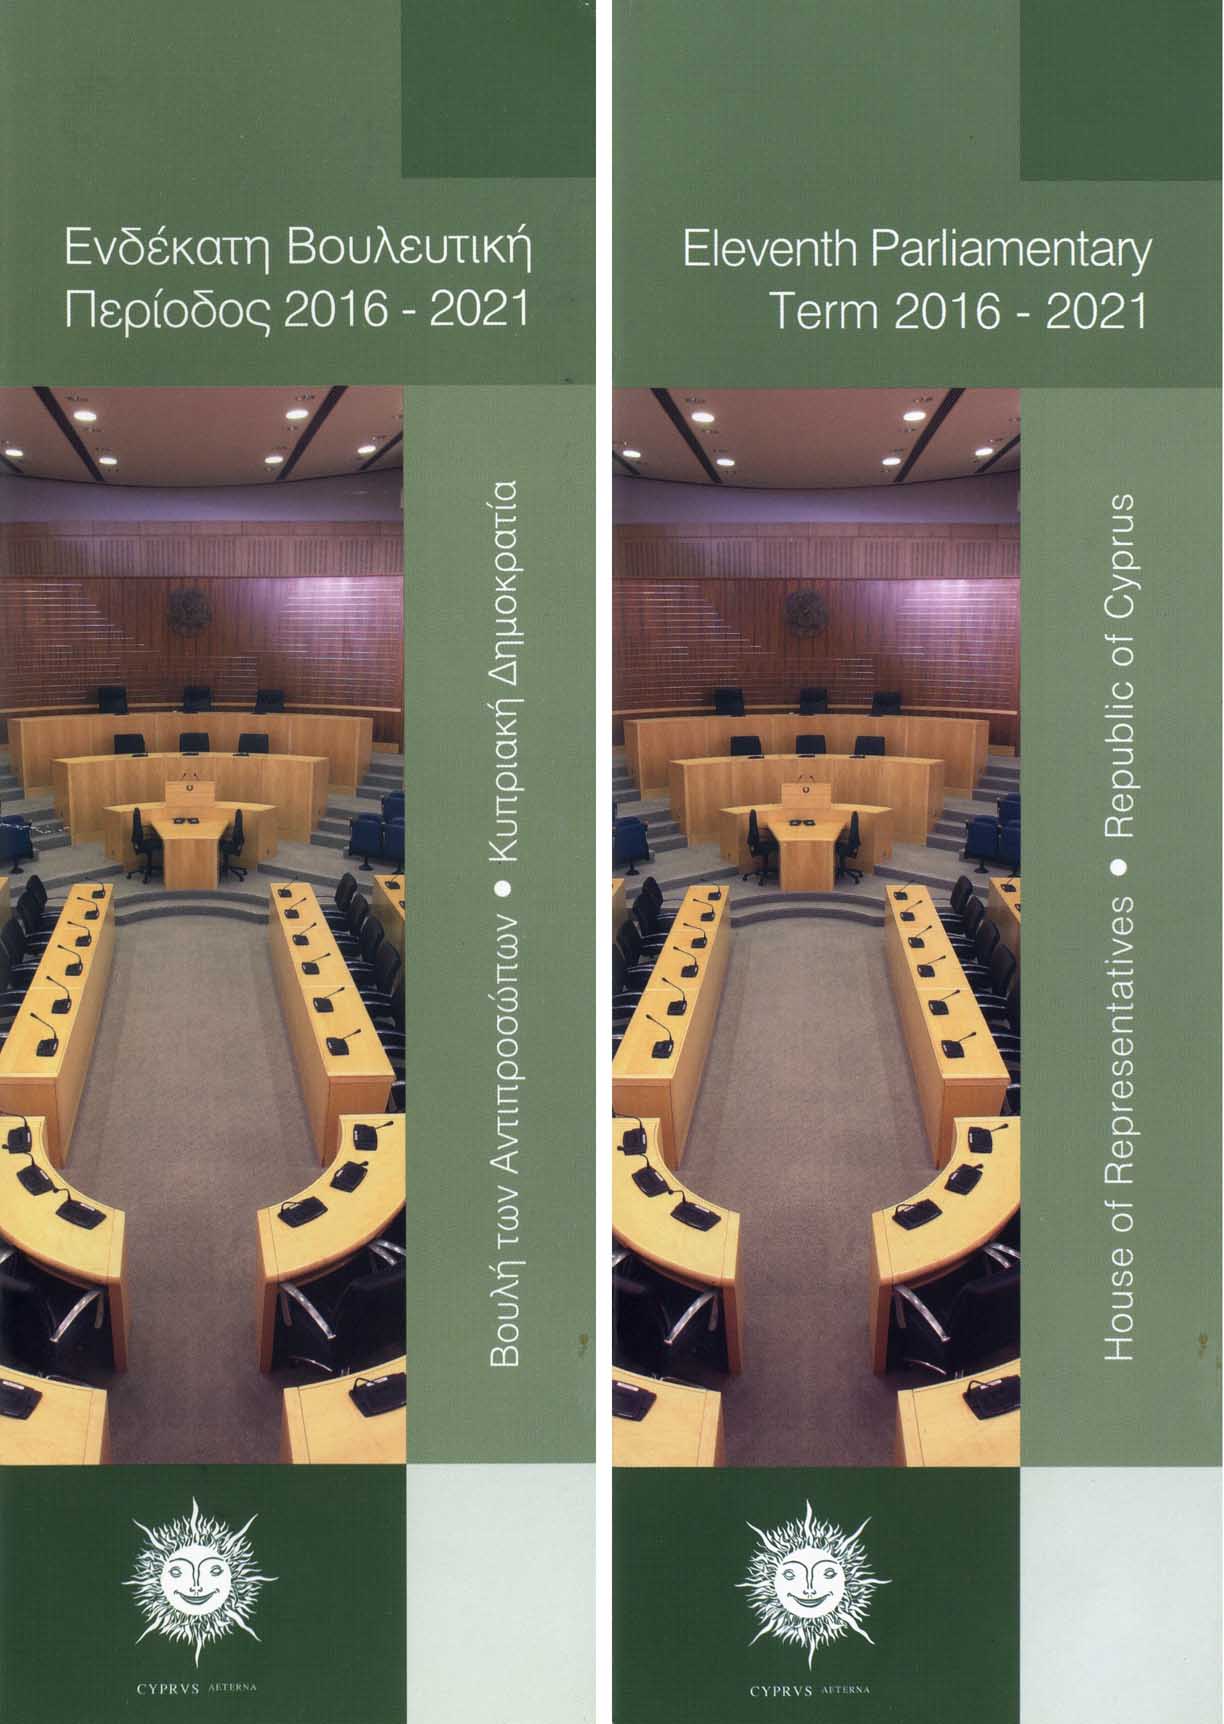 Ενδέκατη Βουλευτική Περίοδος 2016-2021 / Eleventh Parliamentary Term 2016-2021